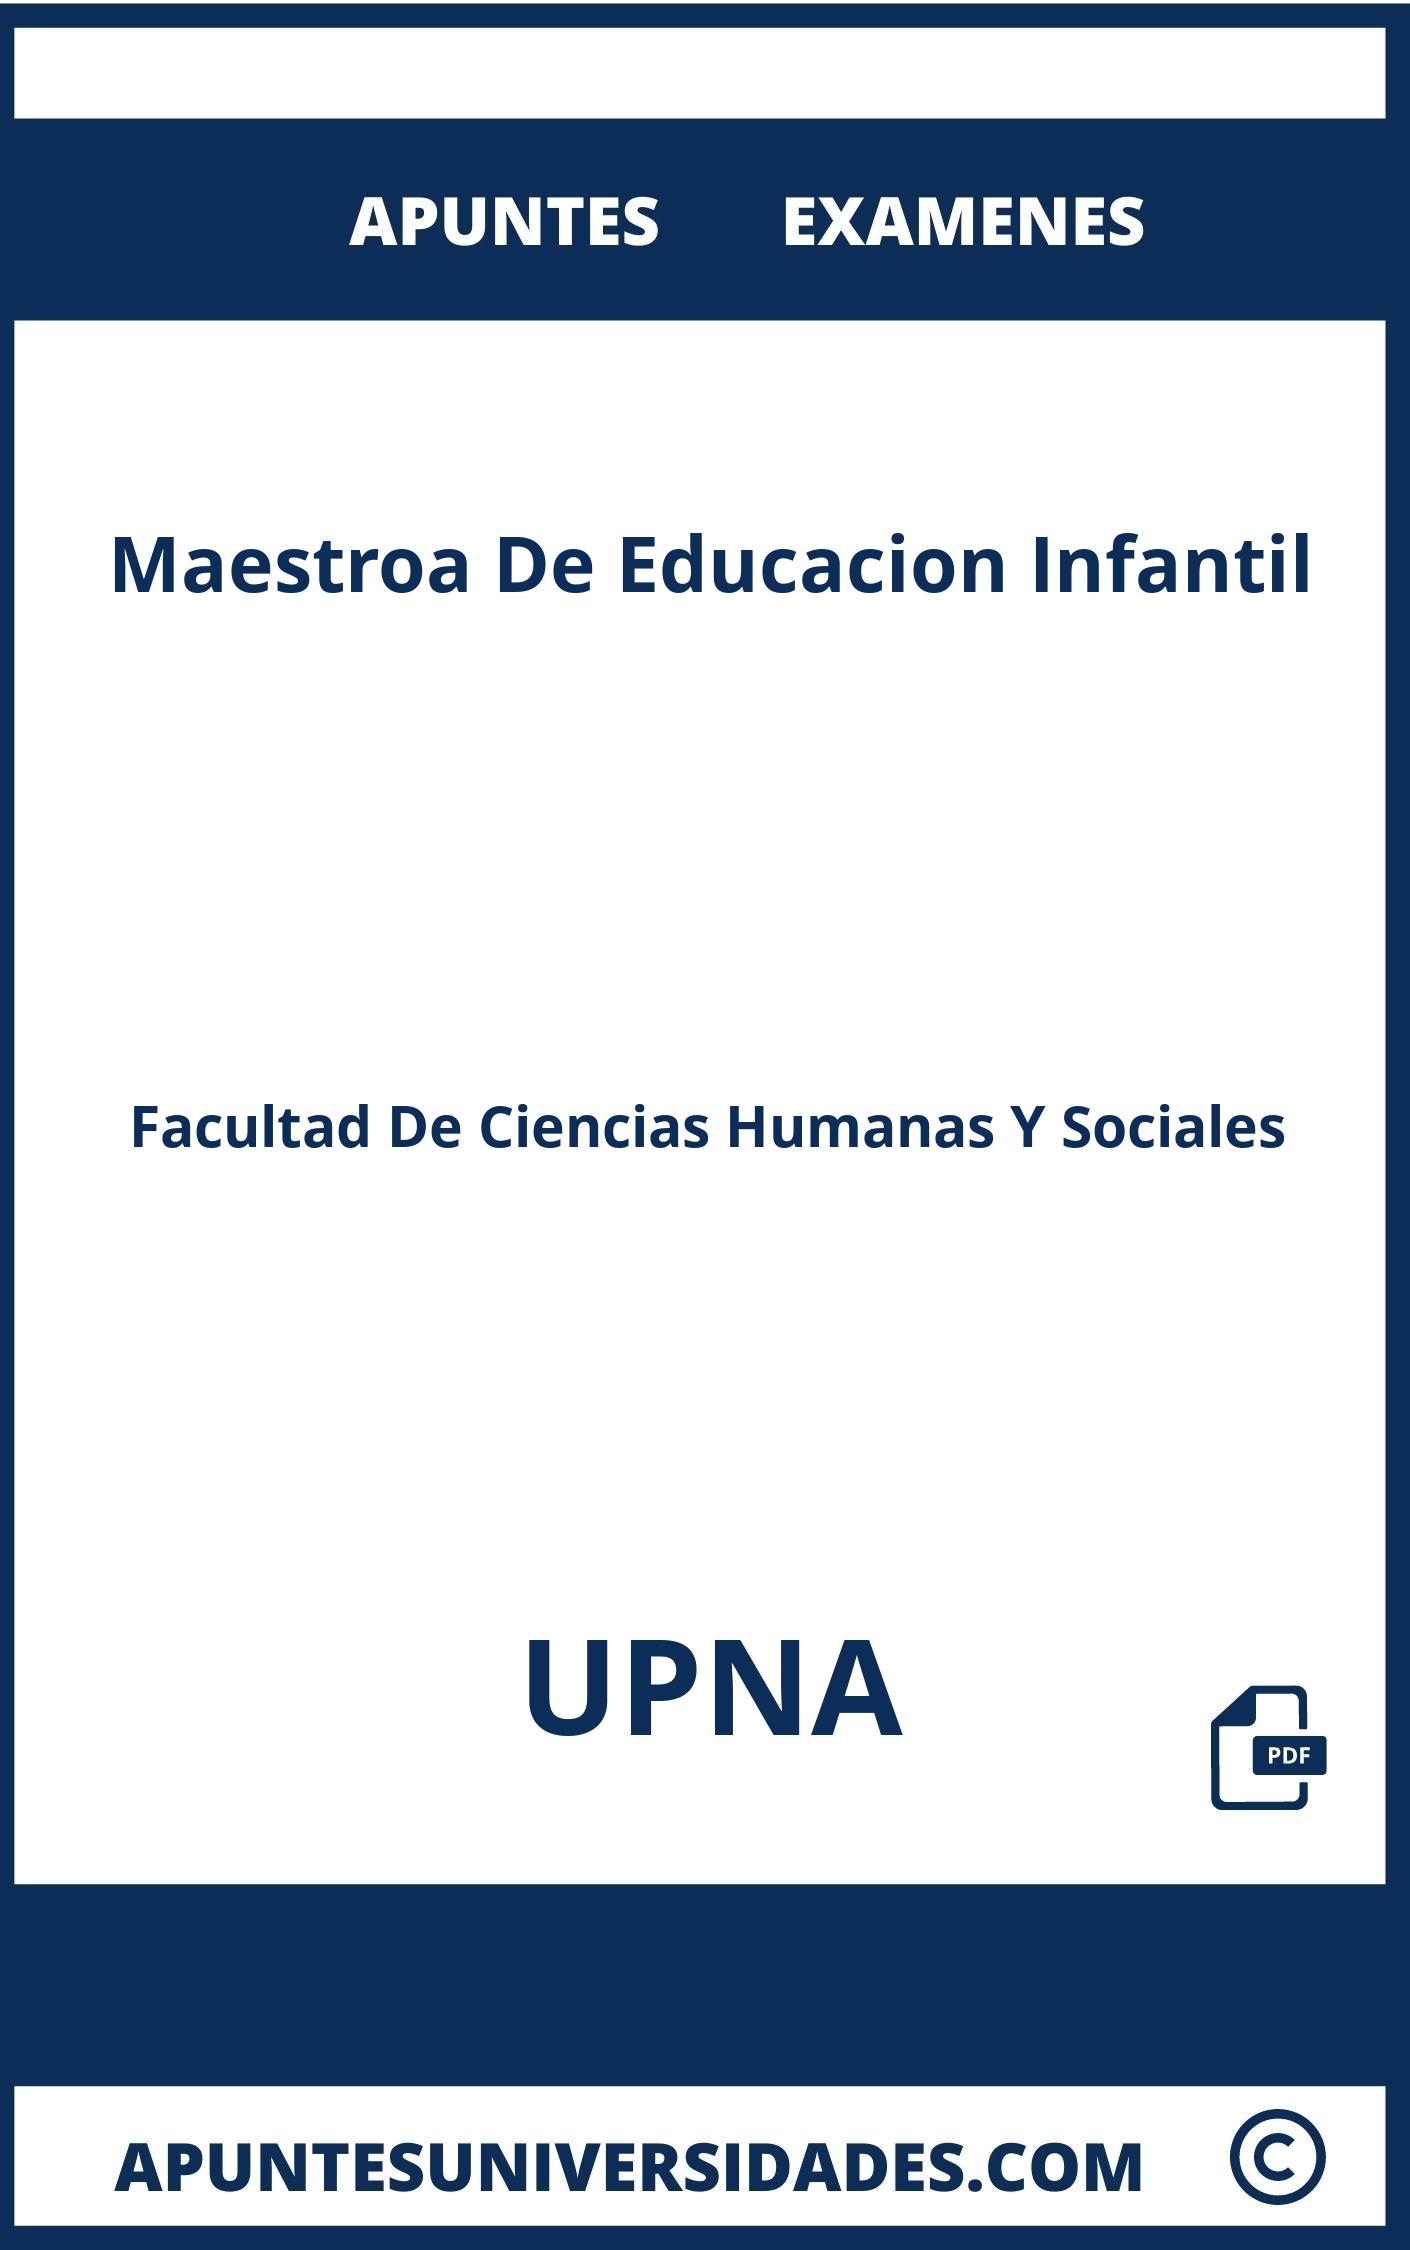 Examenes y Apuntes Maestroa De Educacion Infantil UPNA